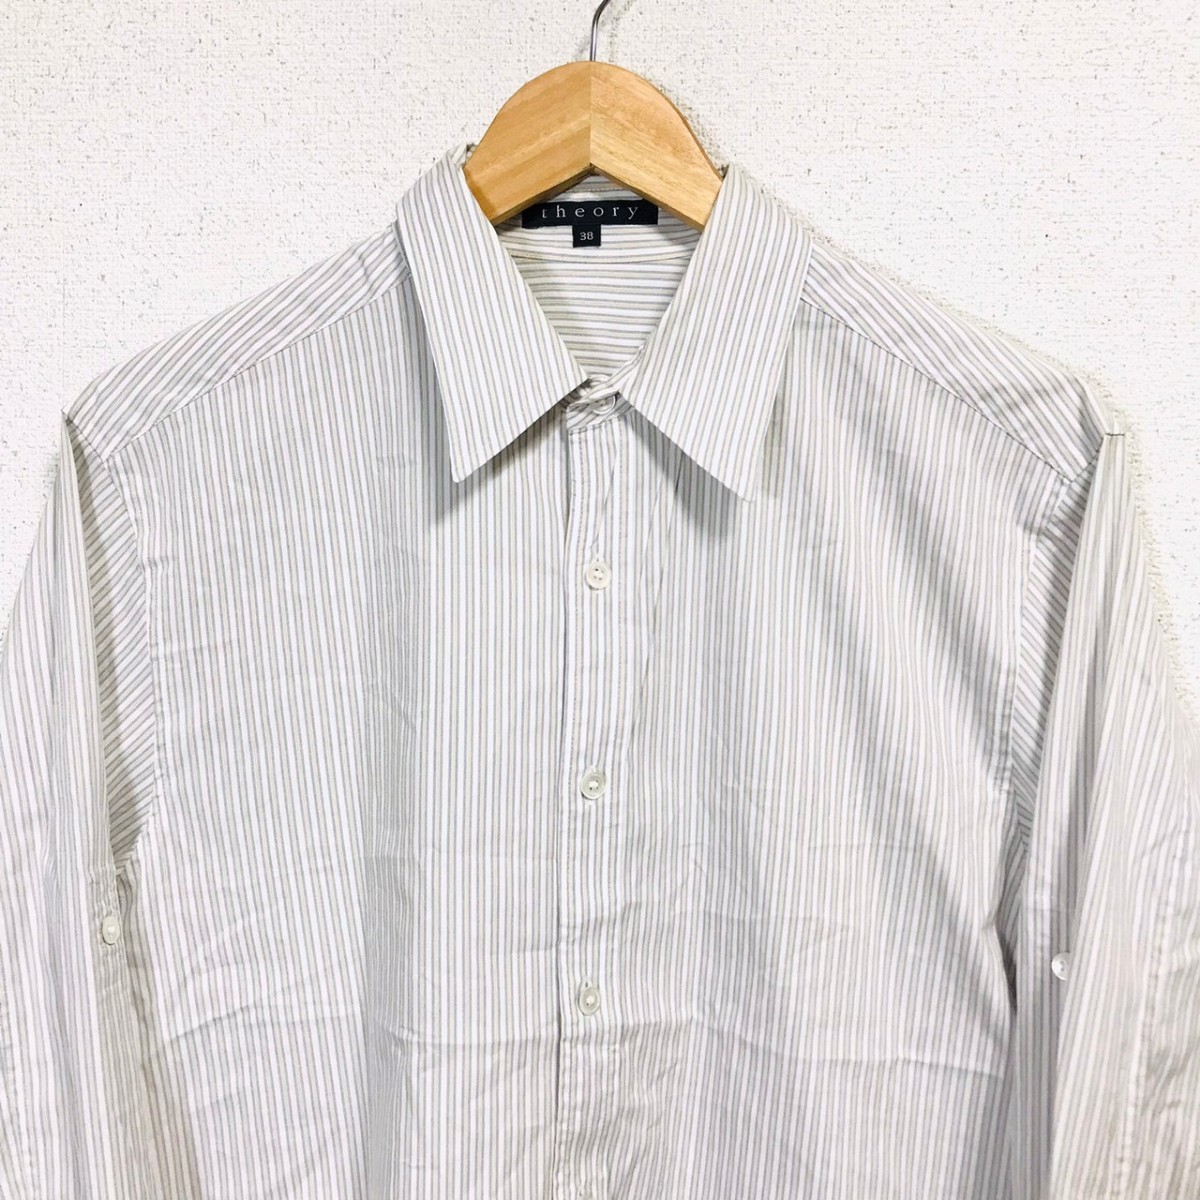 H5216dL 日本製 theory セオリー サイズ38 (M位) 長袖シャツ ストライプシャツ ホワイト×ネイビー×イエロー きれいめ Yシャツ メンズ_画像4